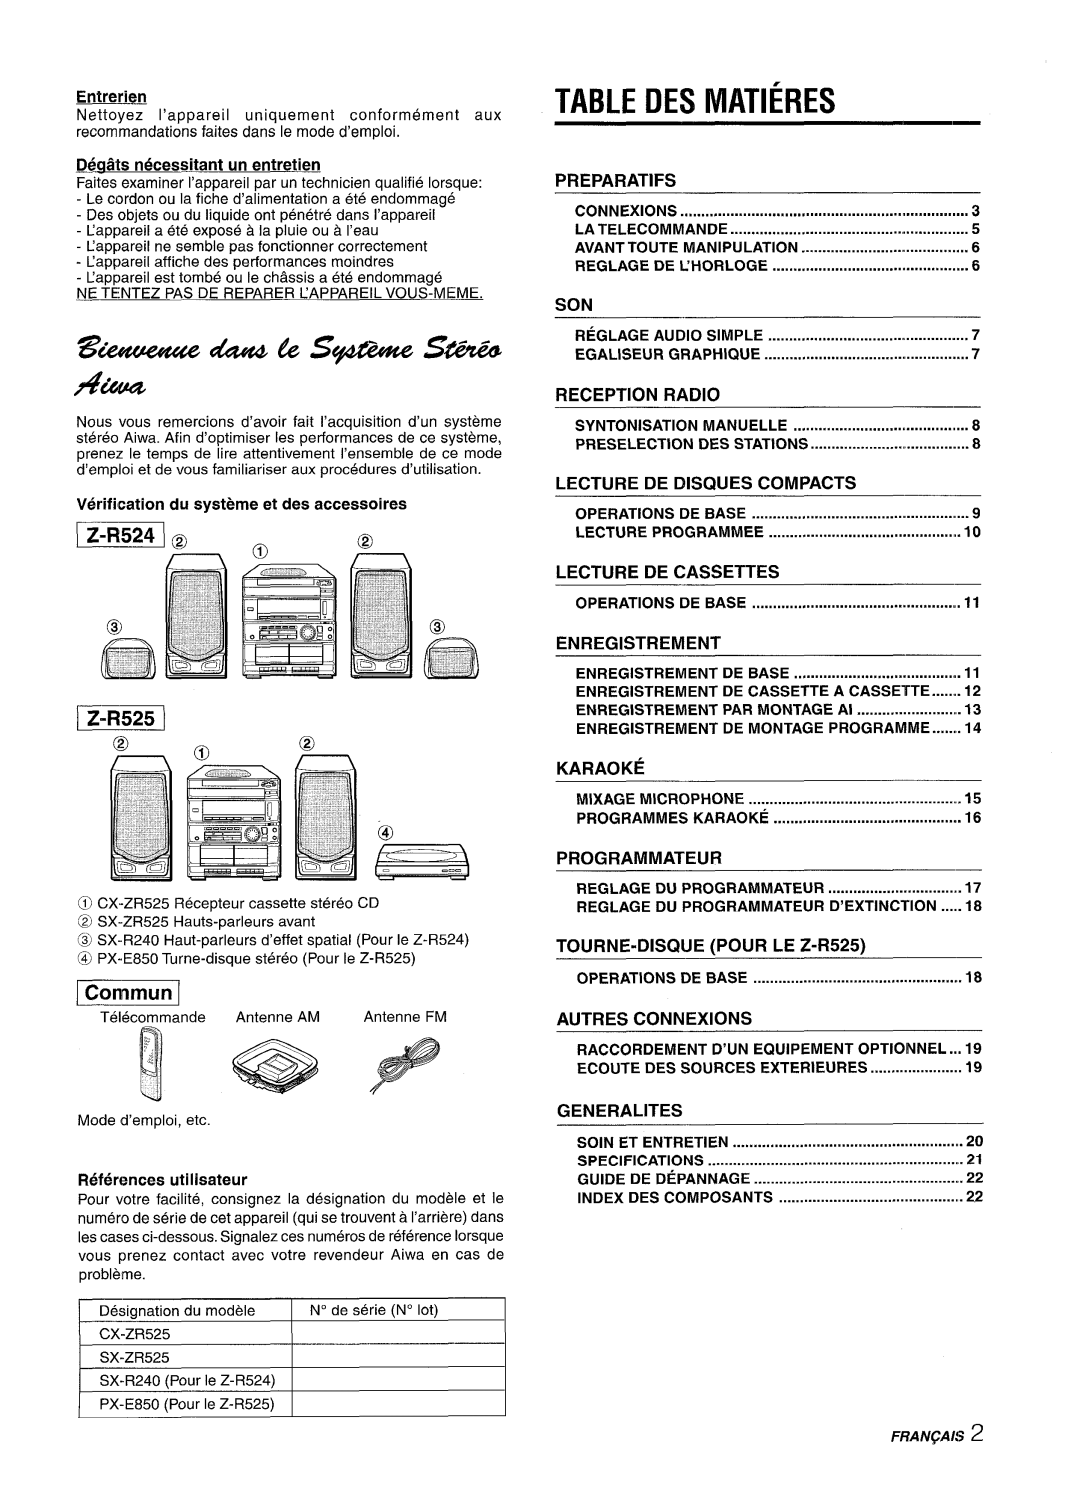 Sony CX-ZR525 r“zmim, Table Des Matieres, K??YIM4, LE Z-R525, Autres Connexions, Generalities, Entrerien, Preparatifs 